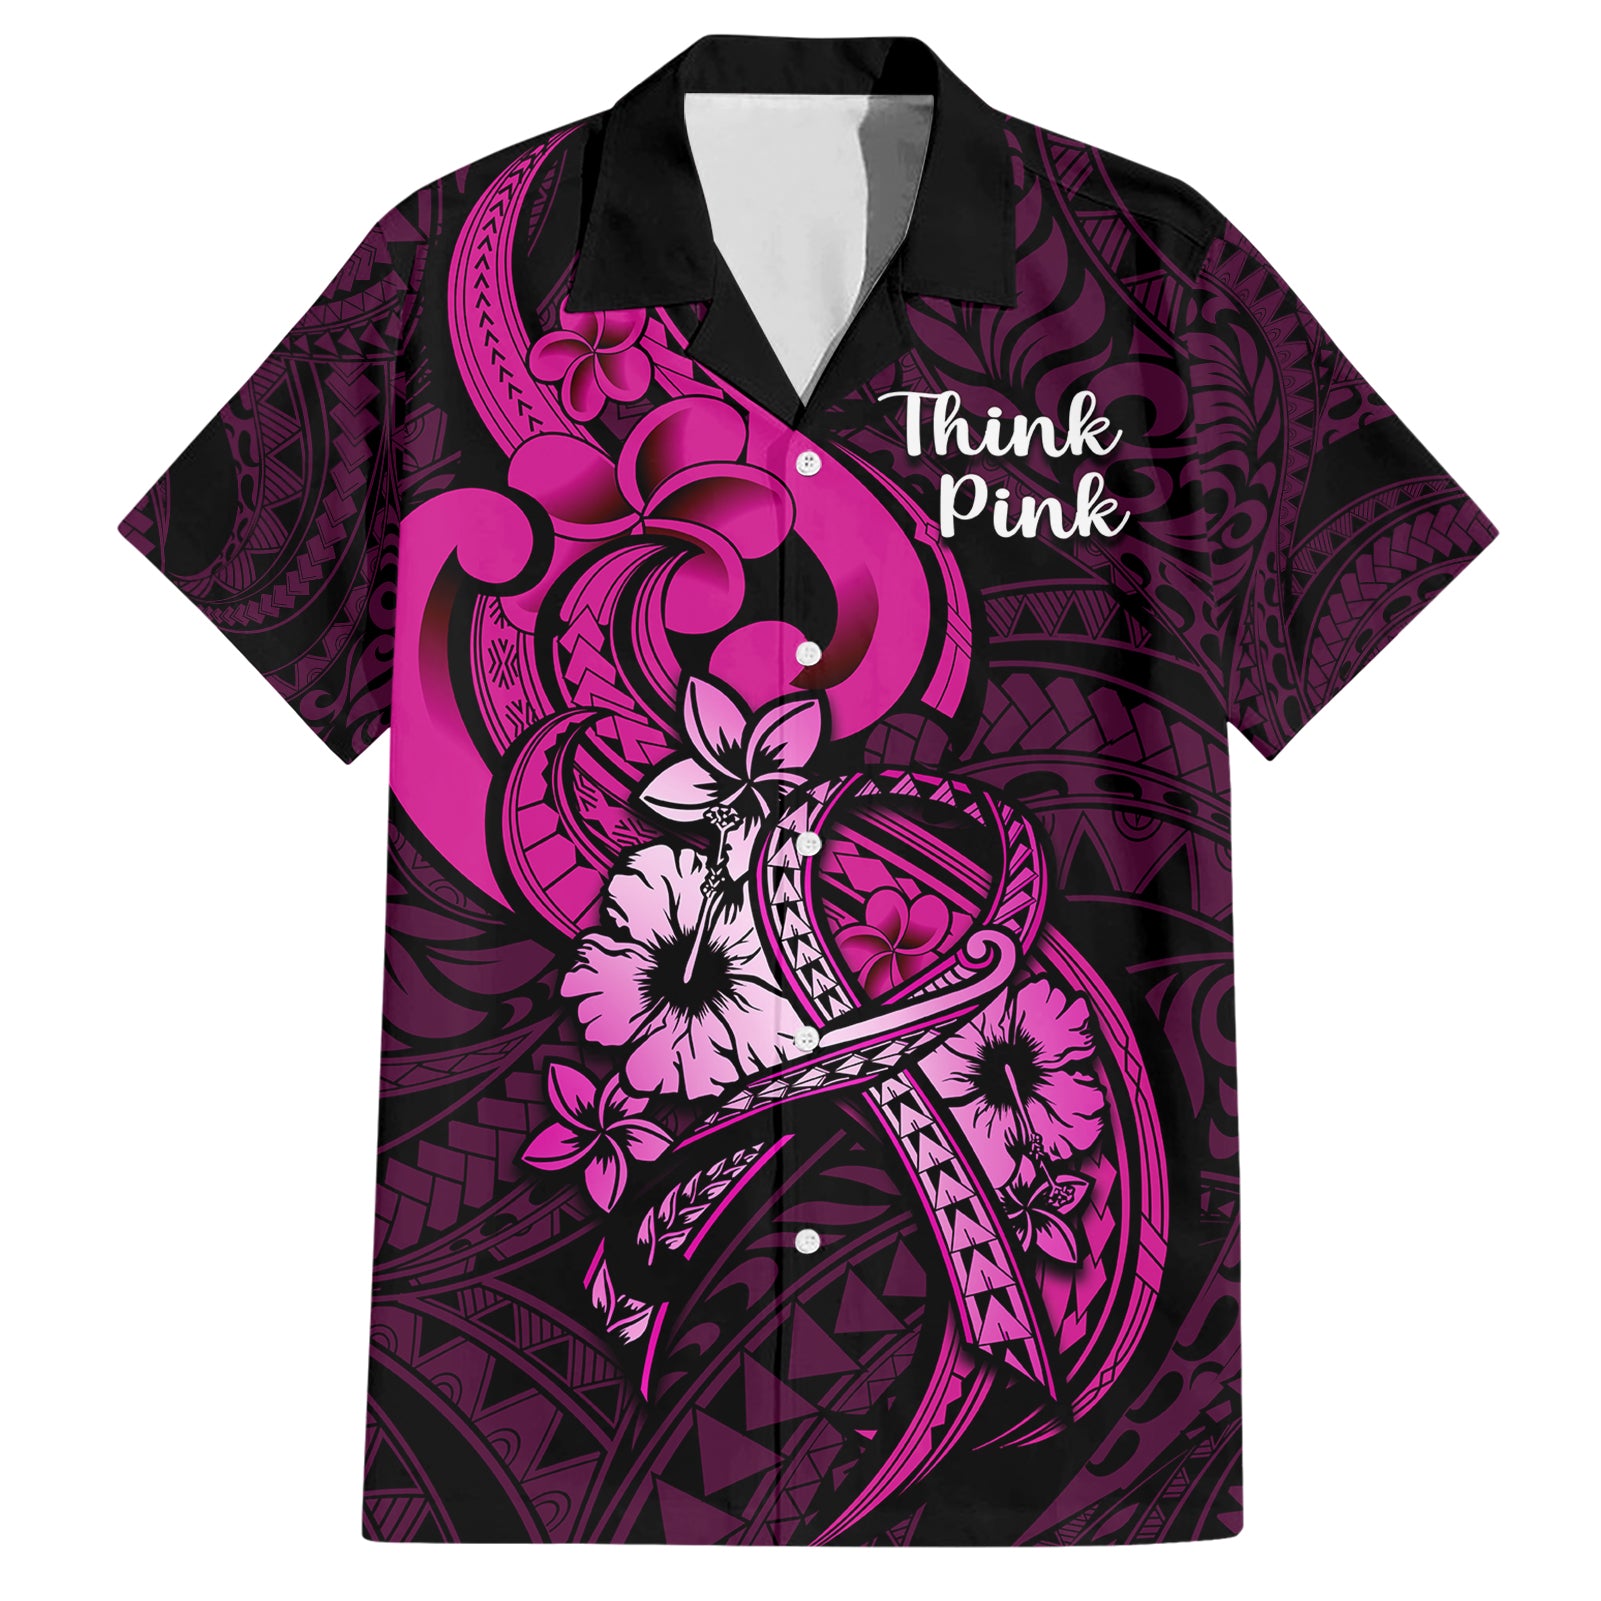 polynesia-breast-cancer-awareness-hawaiian-shirt-think-pink-polynesian-ribbon-black-version